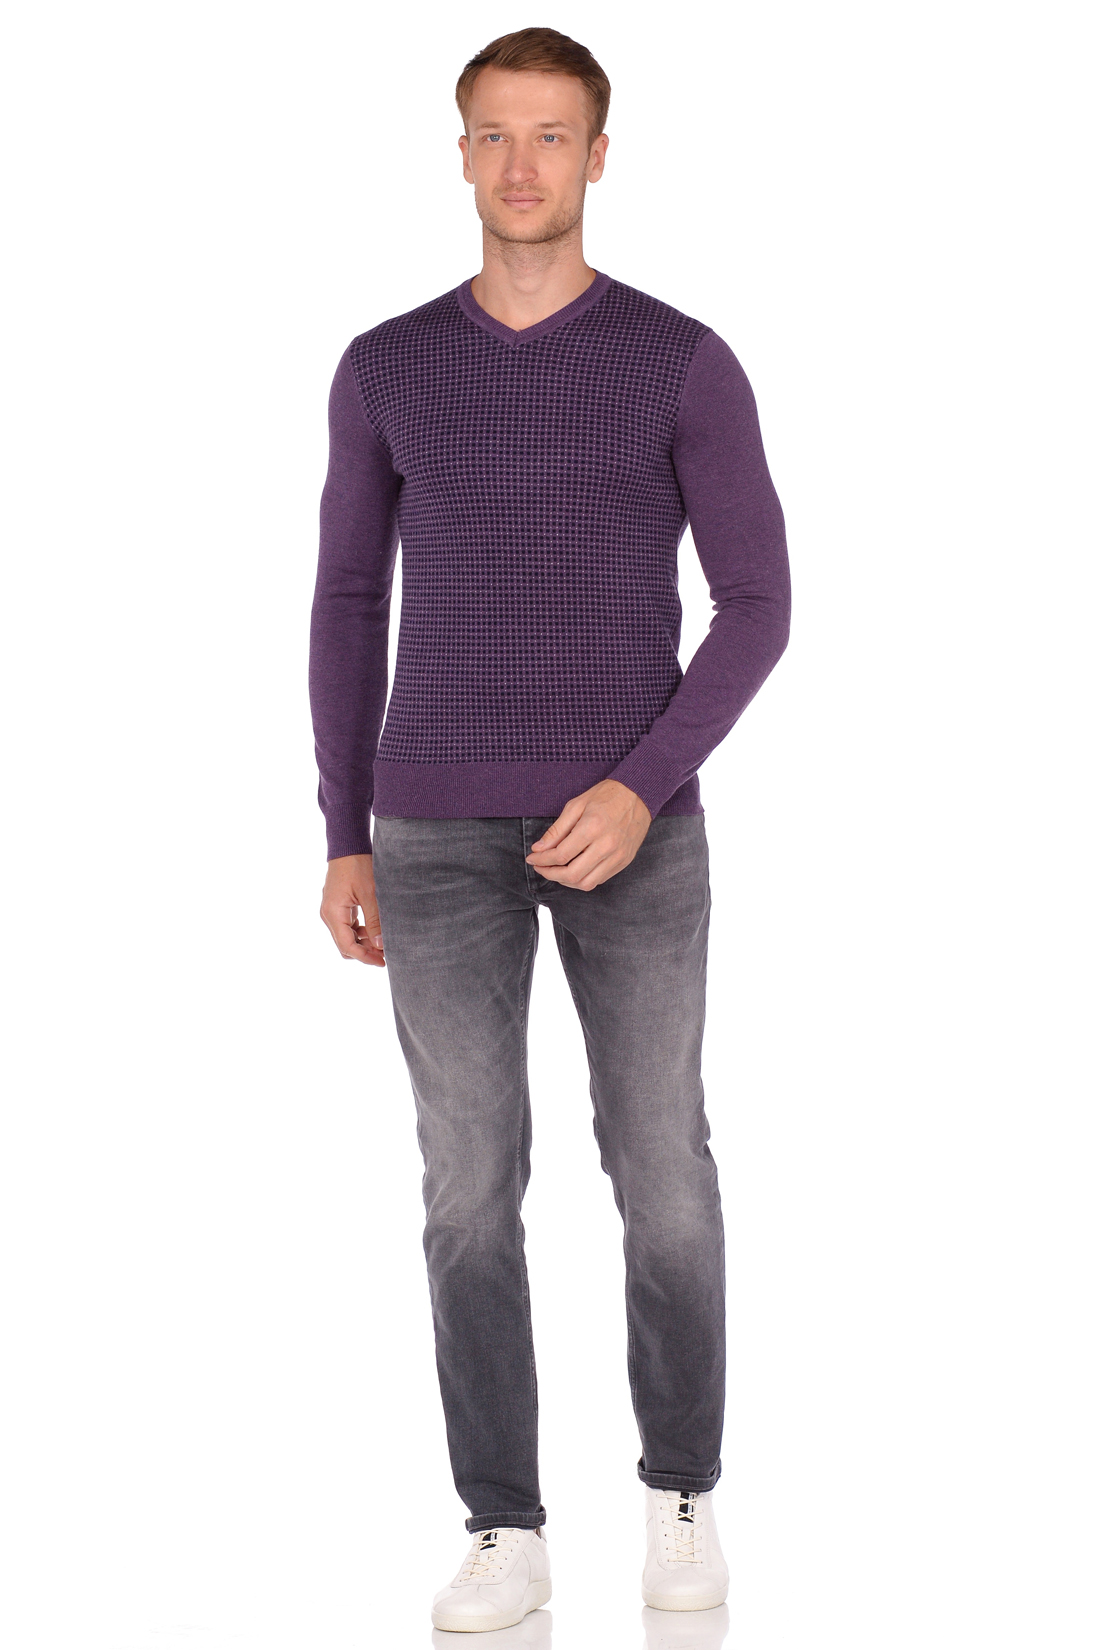 Пуловер с мелким узором в клетку (арт. baon B638503), размер XL, цвет фиолетовый Пуловер с мелким узором в клетку (арт. baon B638503) - фото 3